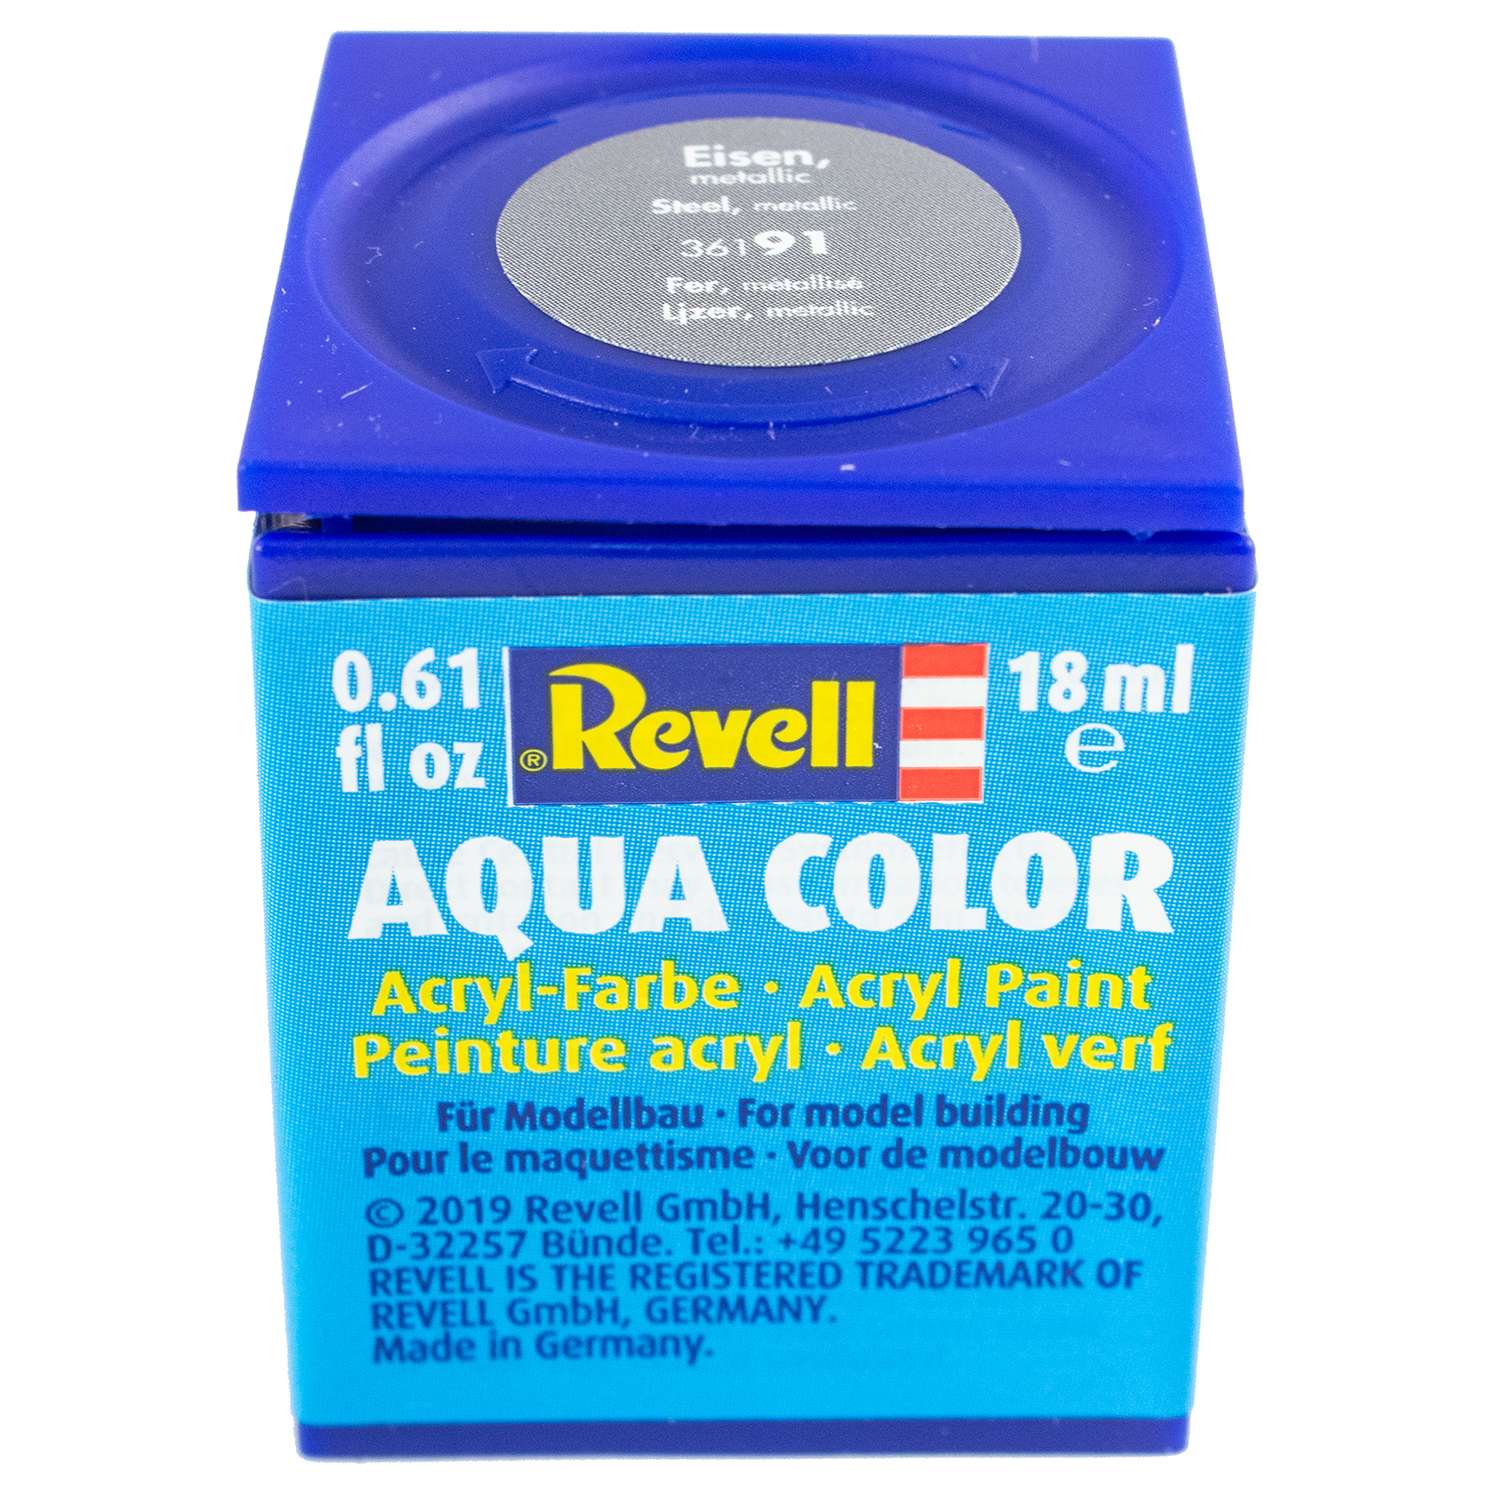 Аква-краска Revell цвета железа металлик 36191 - фото 1